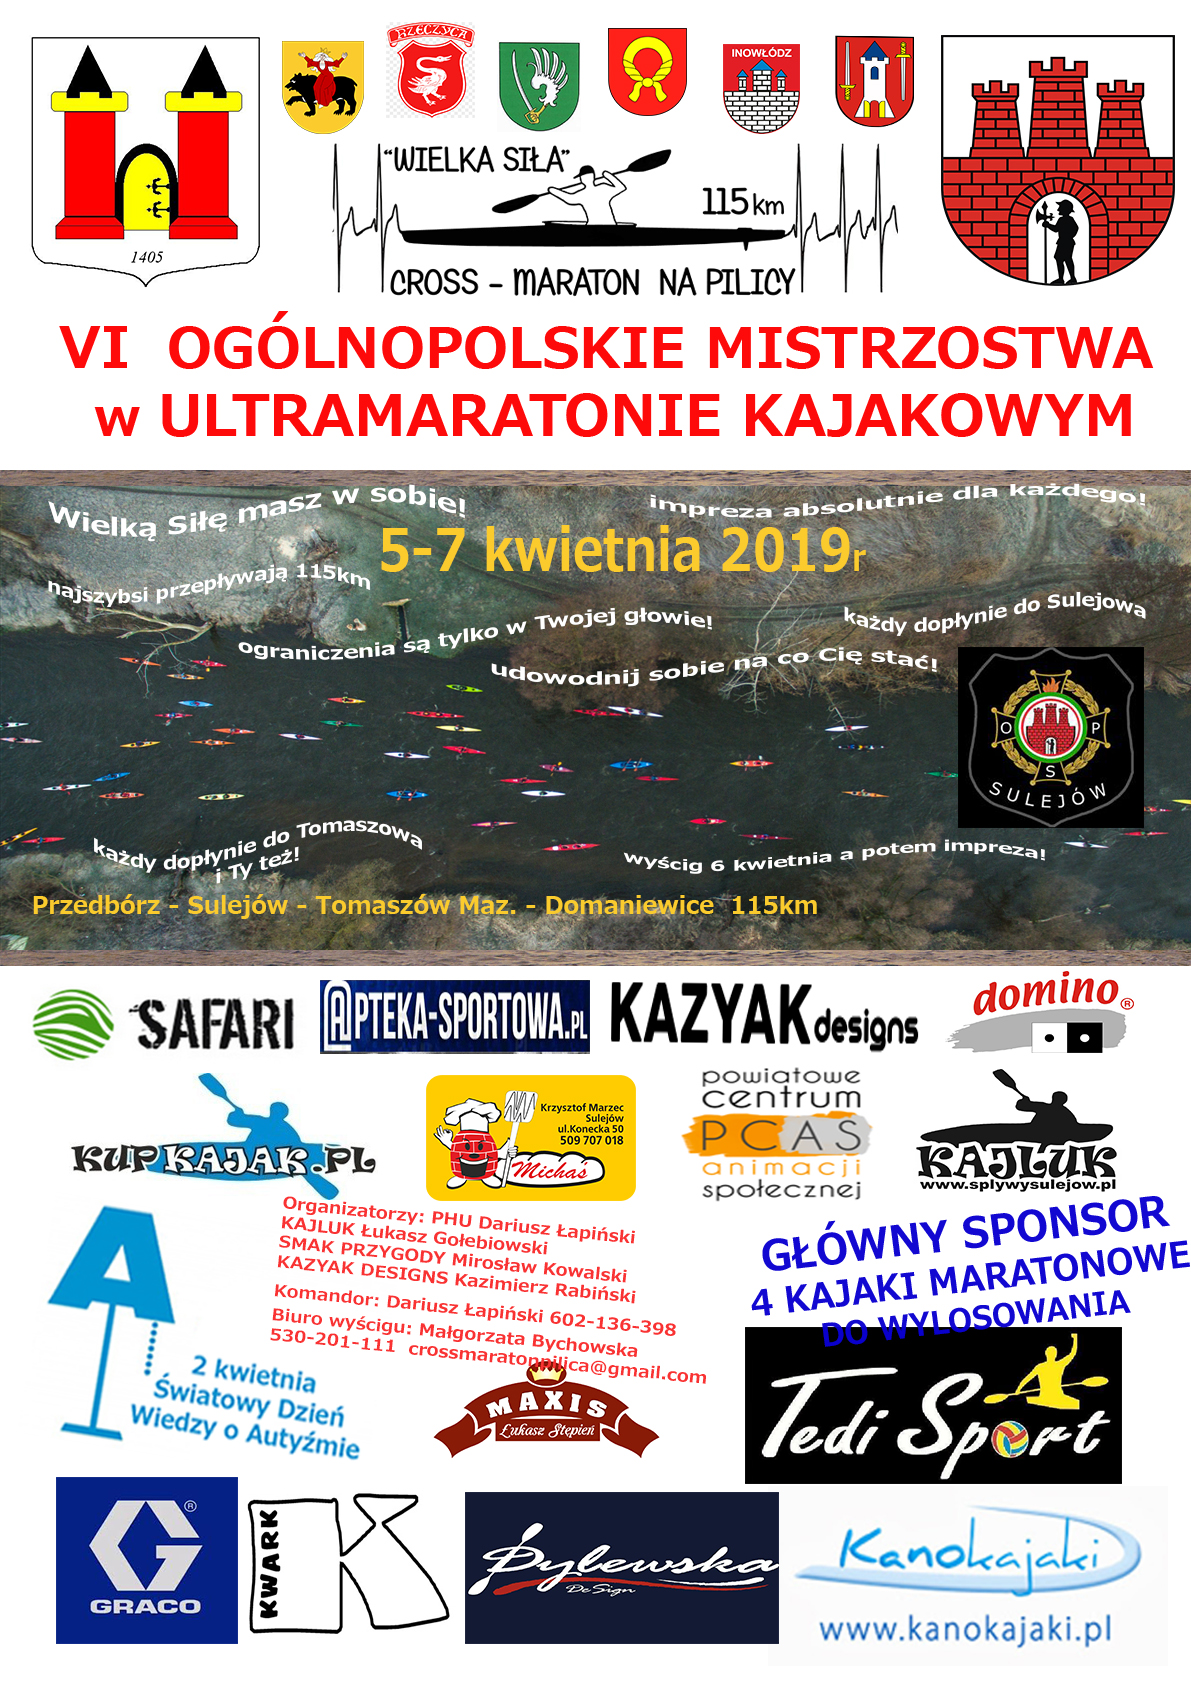 Photo of VI Ogólnopolskie Mistrzostwa w Ultramaratonie Kajakowym